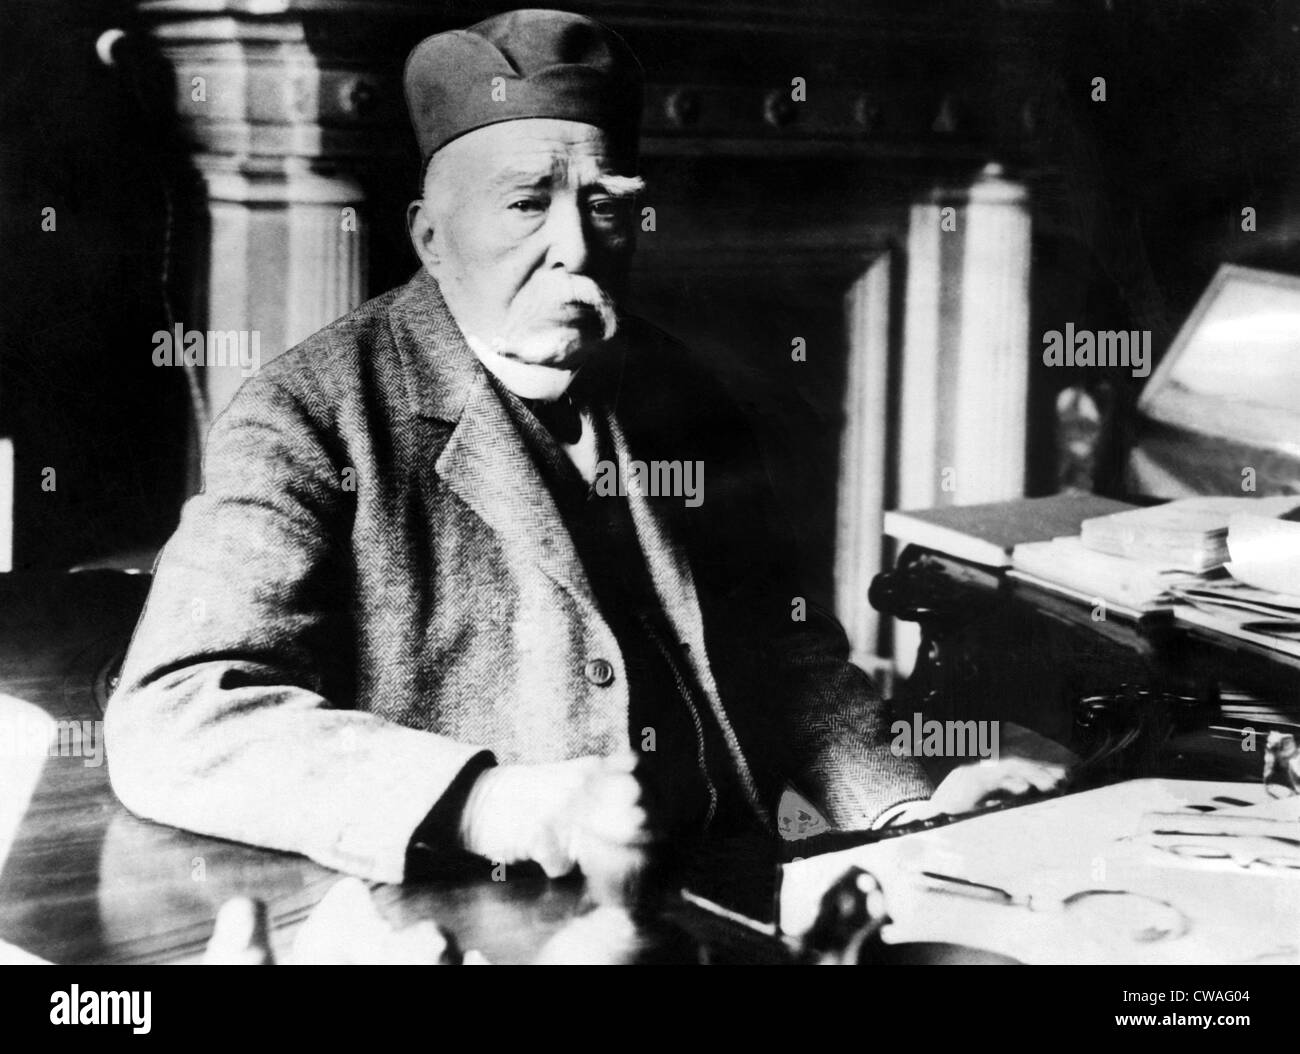 Homme d'État français Geroges Clemenceau'à son domicile à Paris.Avec la permission de la CSU Archives/Everett Collection. Banque D'Images